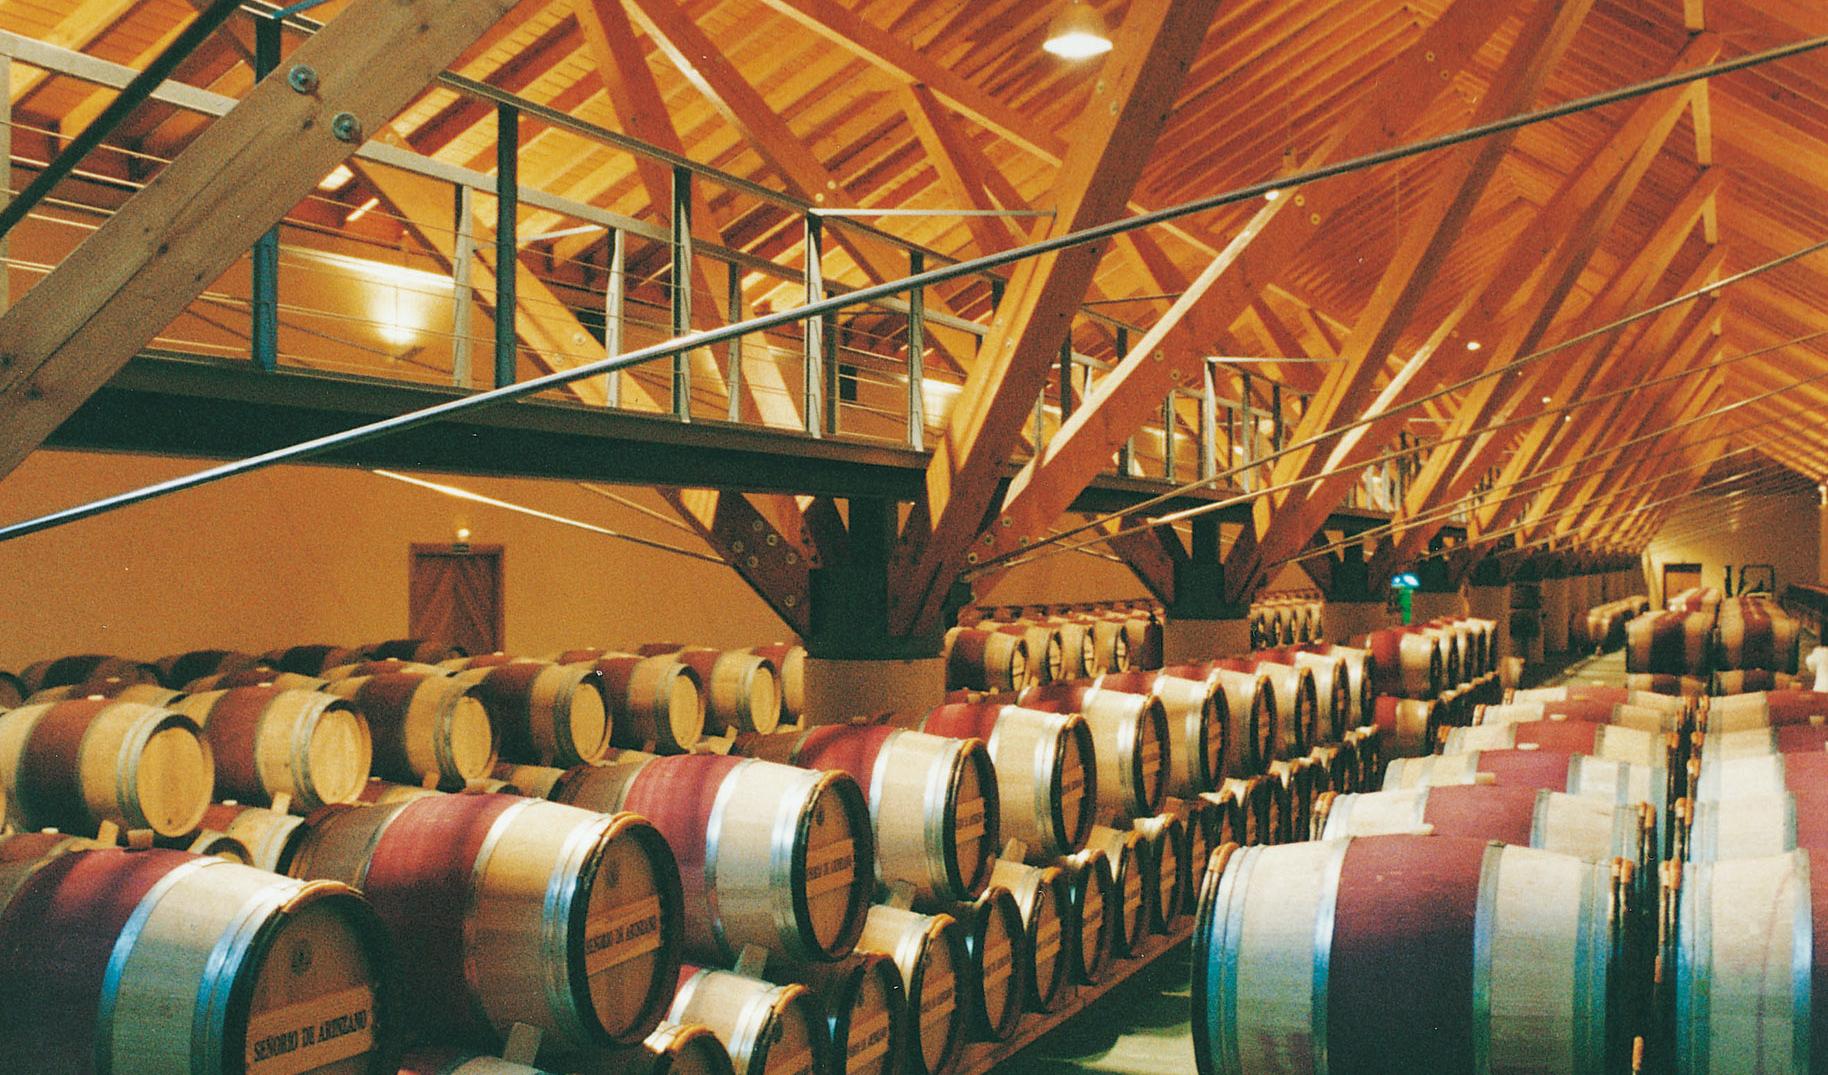 BEKA Referenz Weinkellerei in Spanien - Fässer im temperierten Weinkeller